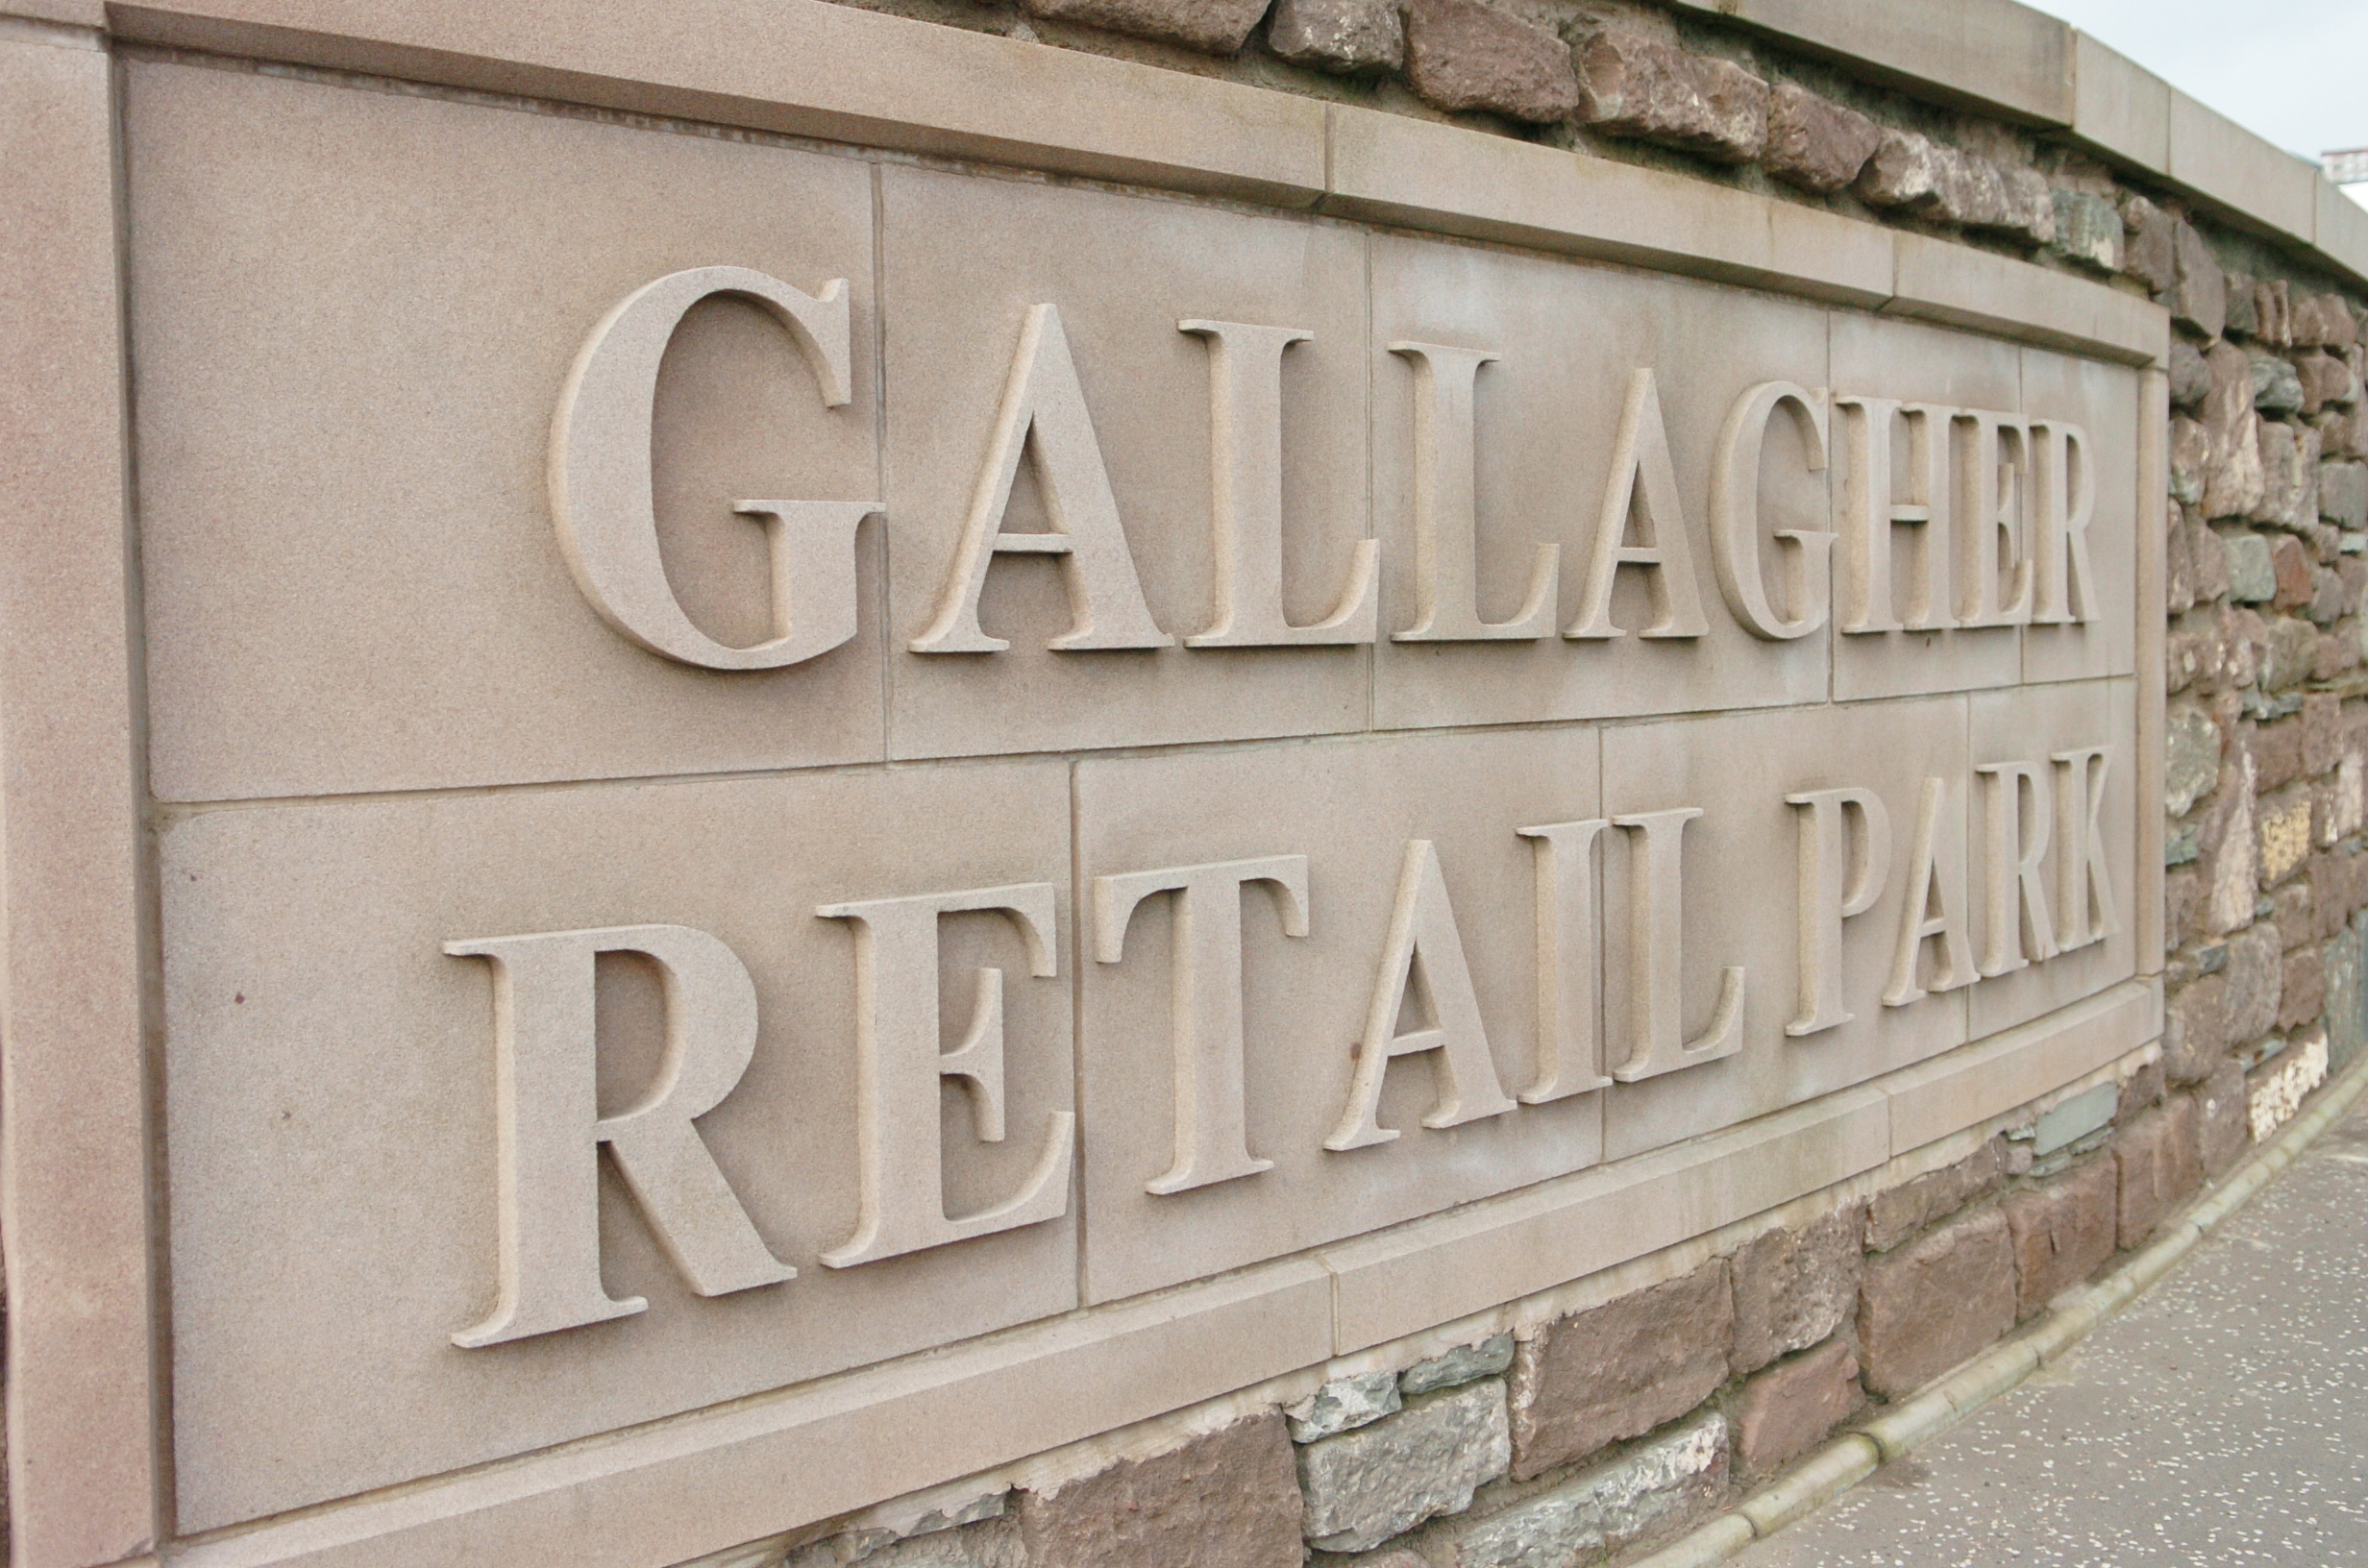 Gallagher Retail Park.